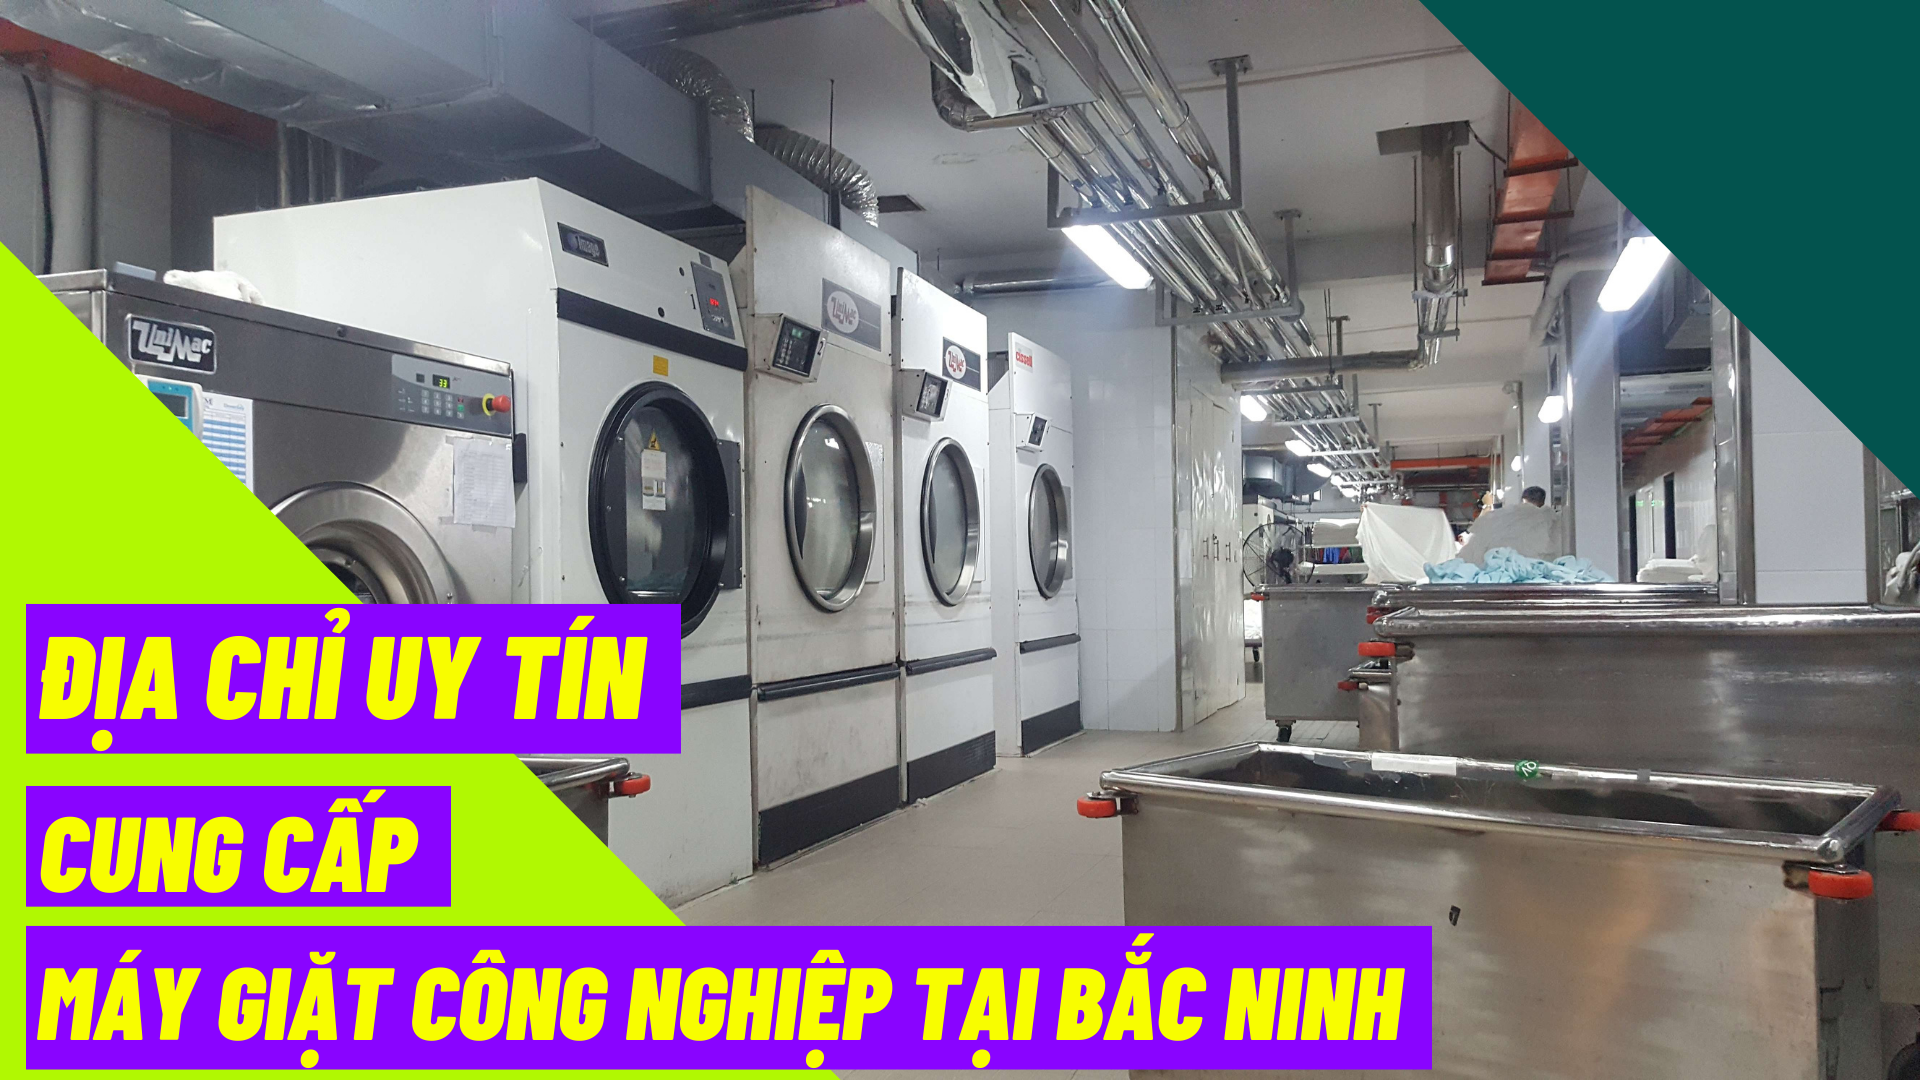 Địa chỉ uy tín cung cấp máy giặt công nghiệp tại Bắc Ninh